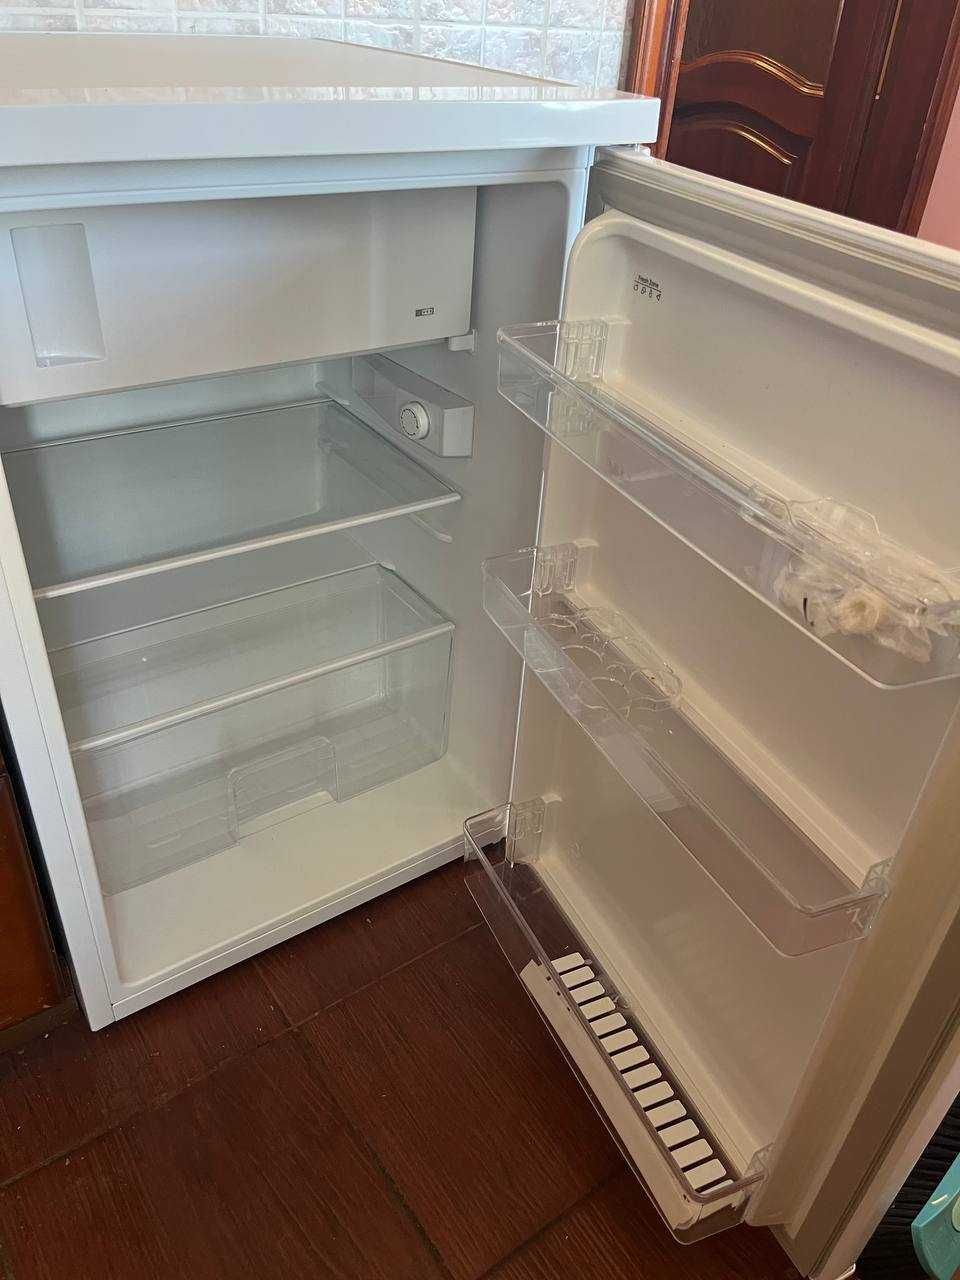 Холодильник Bomann